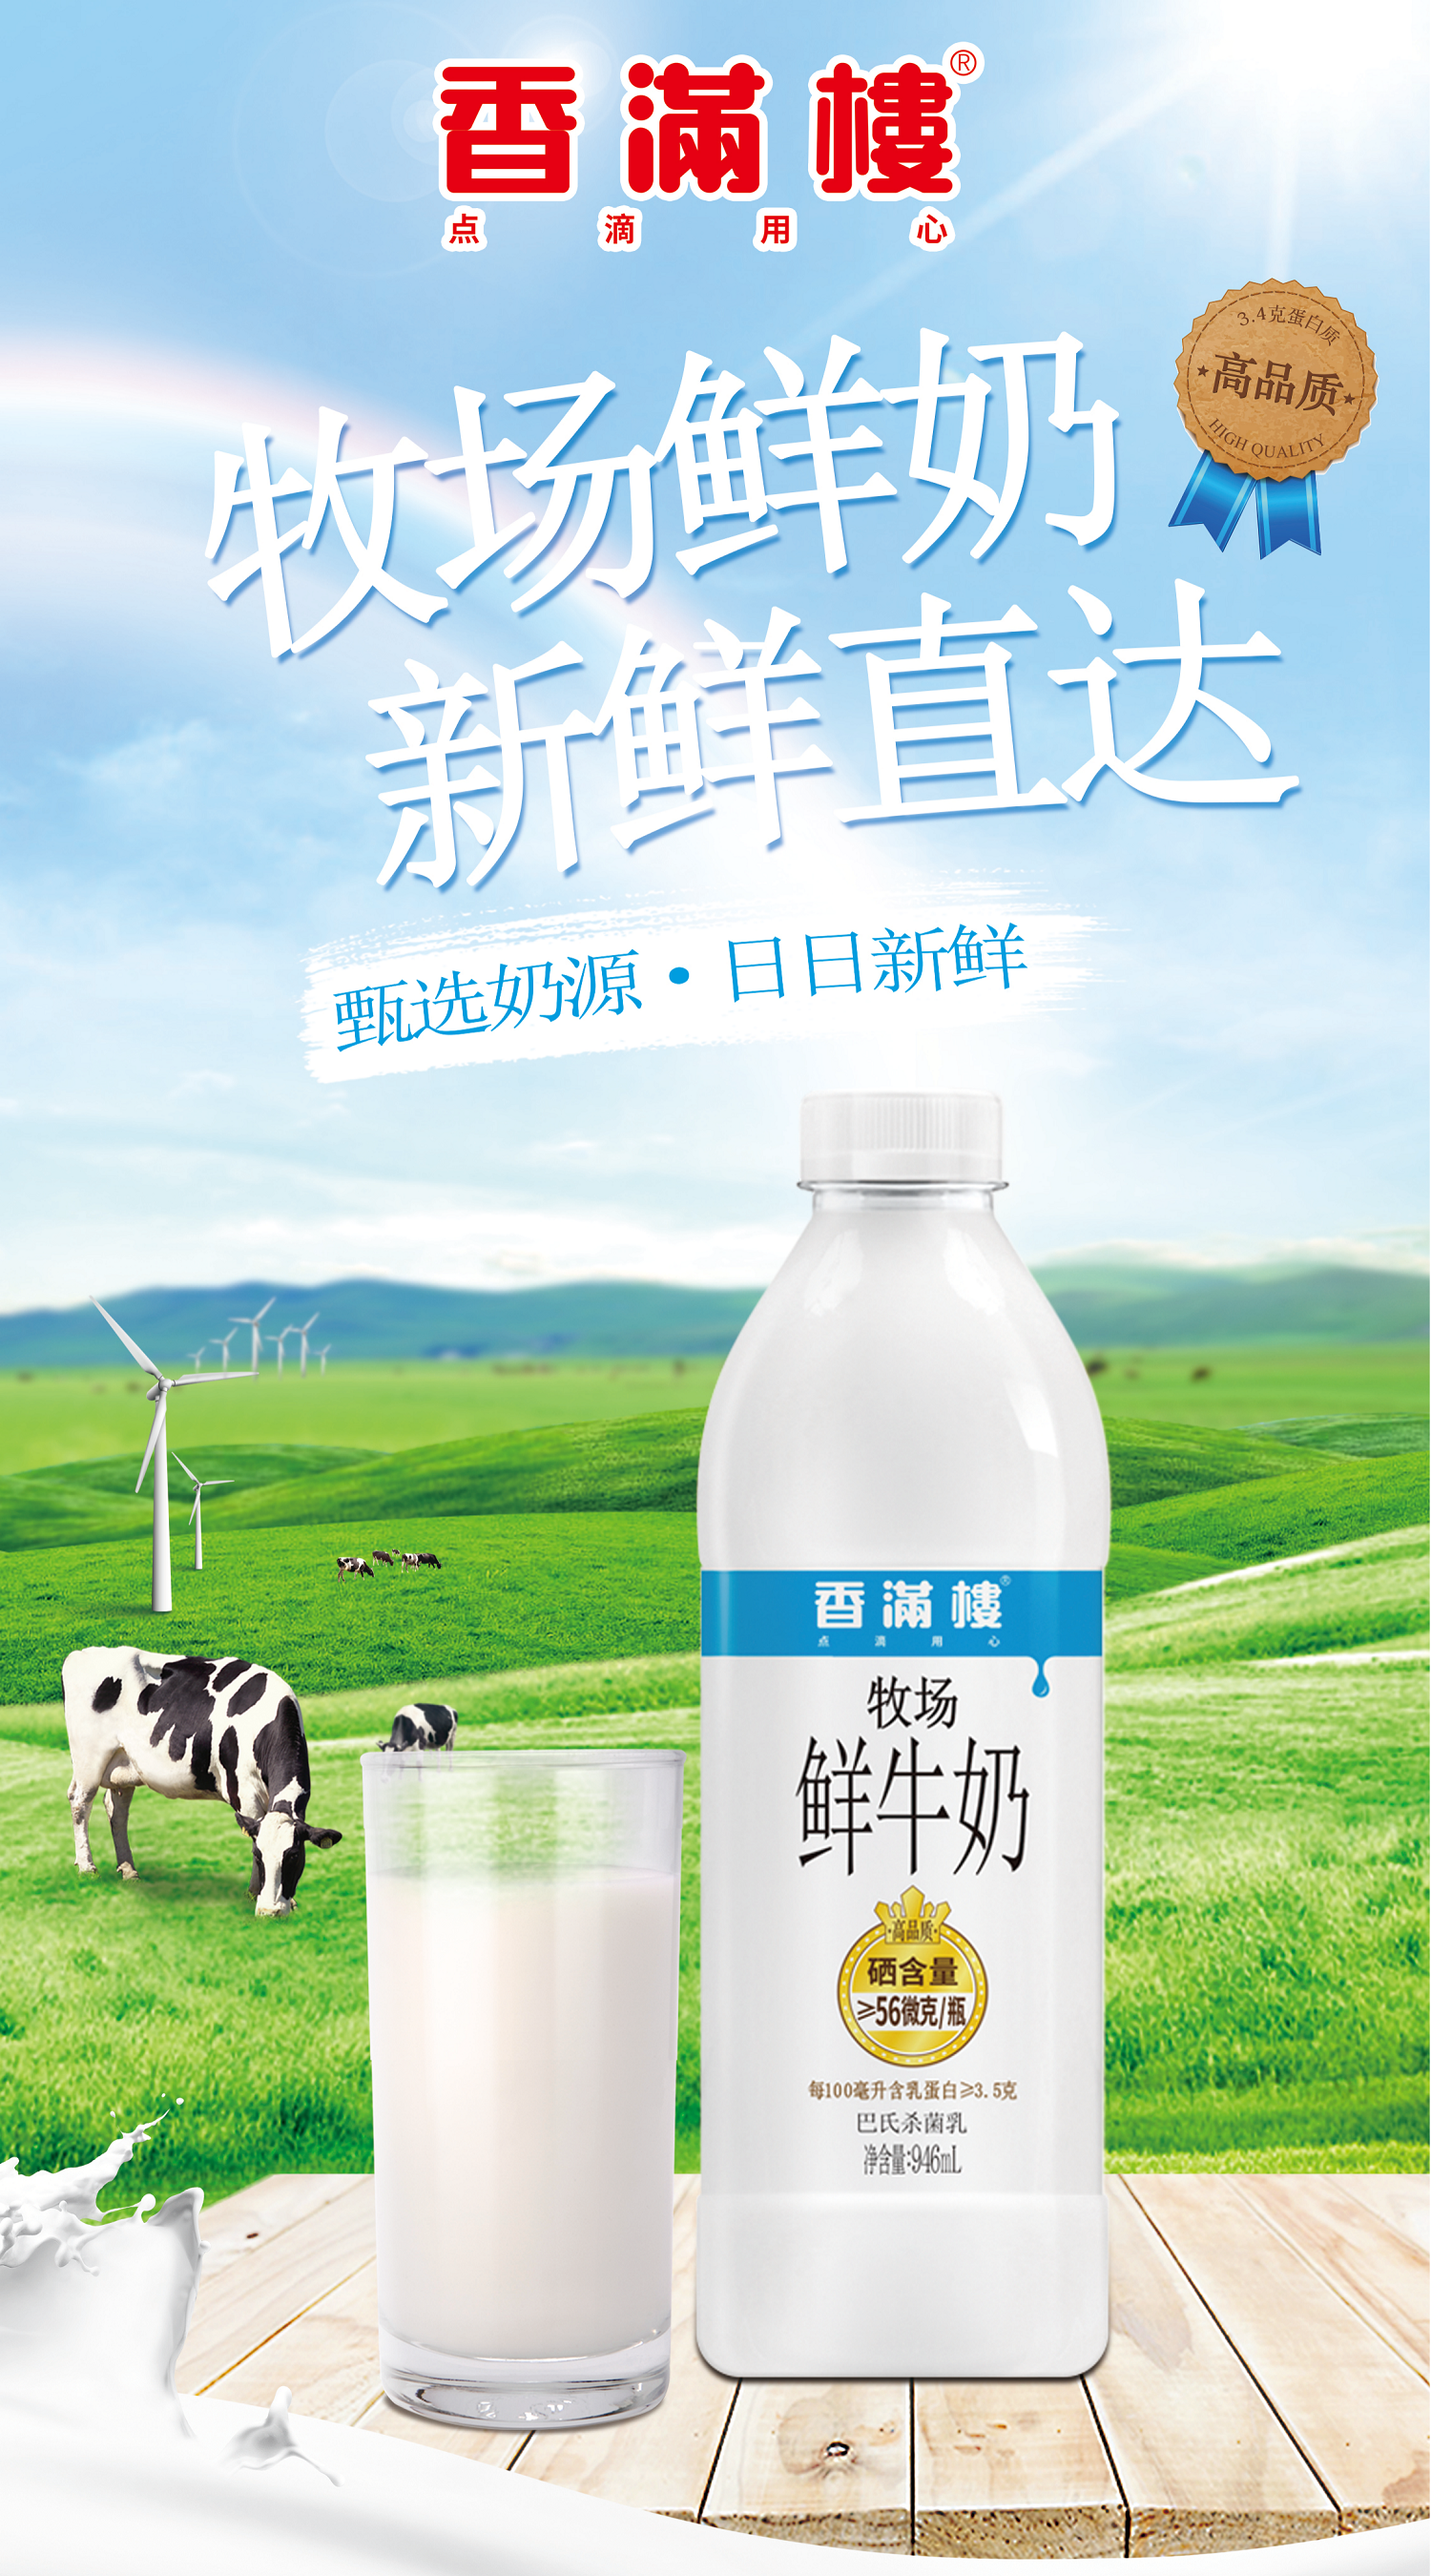 新产品·新升级，香满楼乳业亮相2020广州世界农业博览会